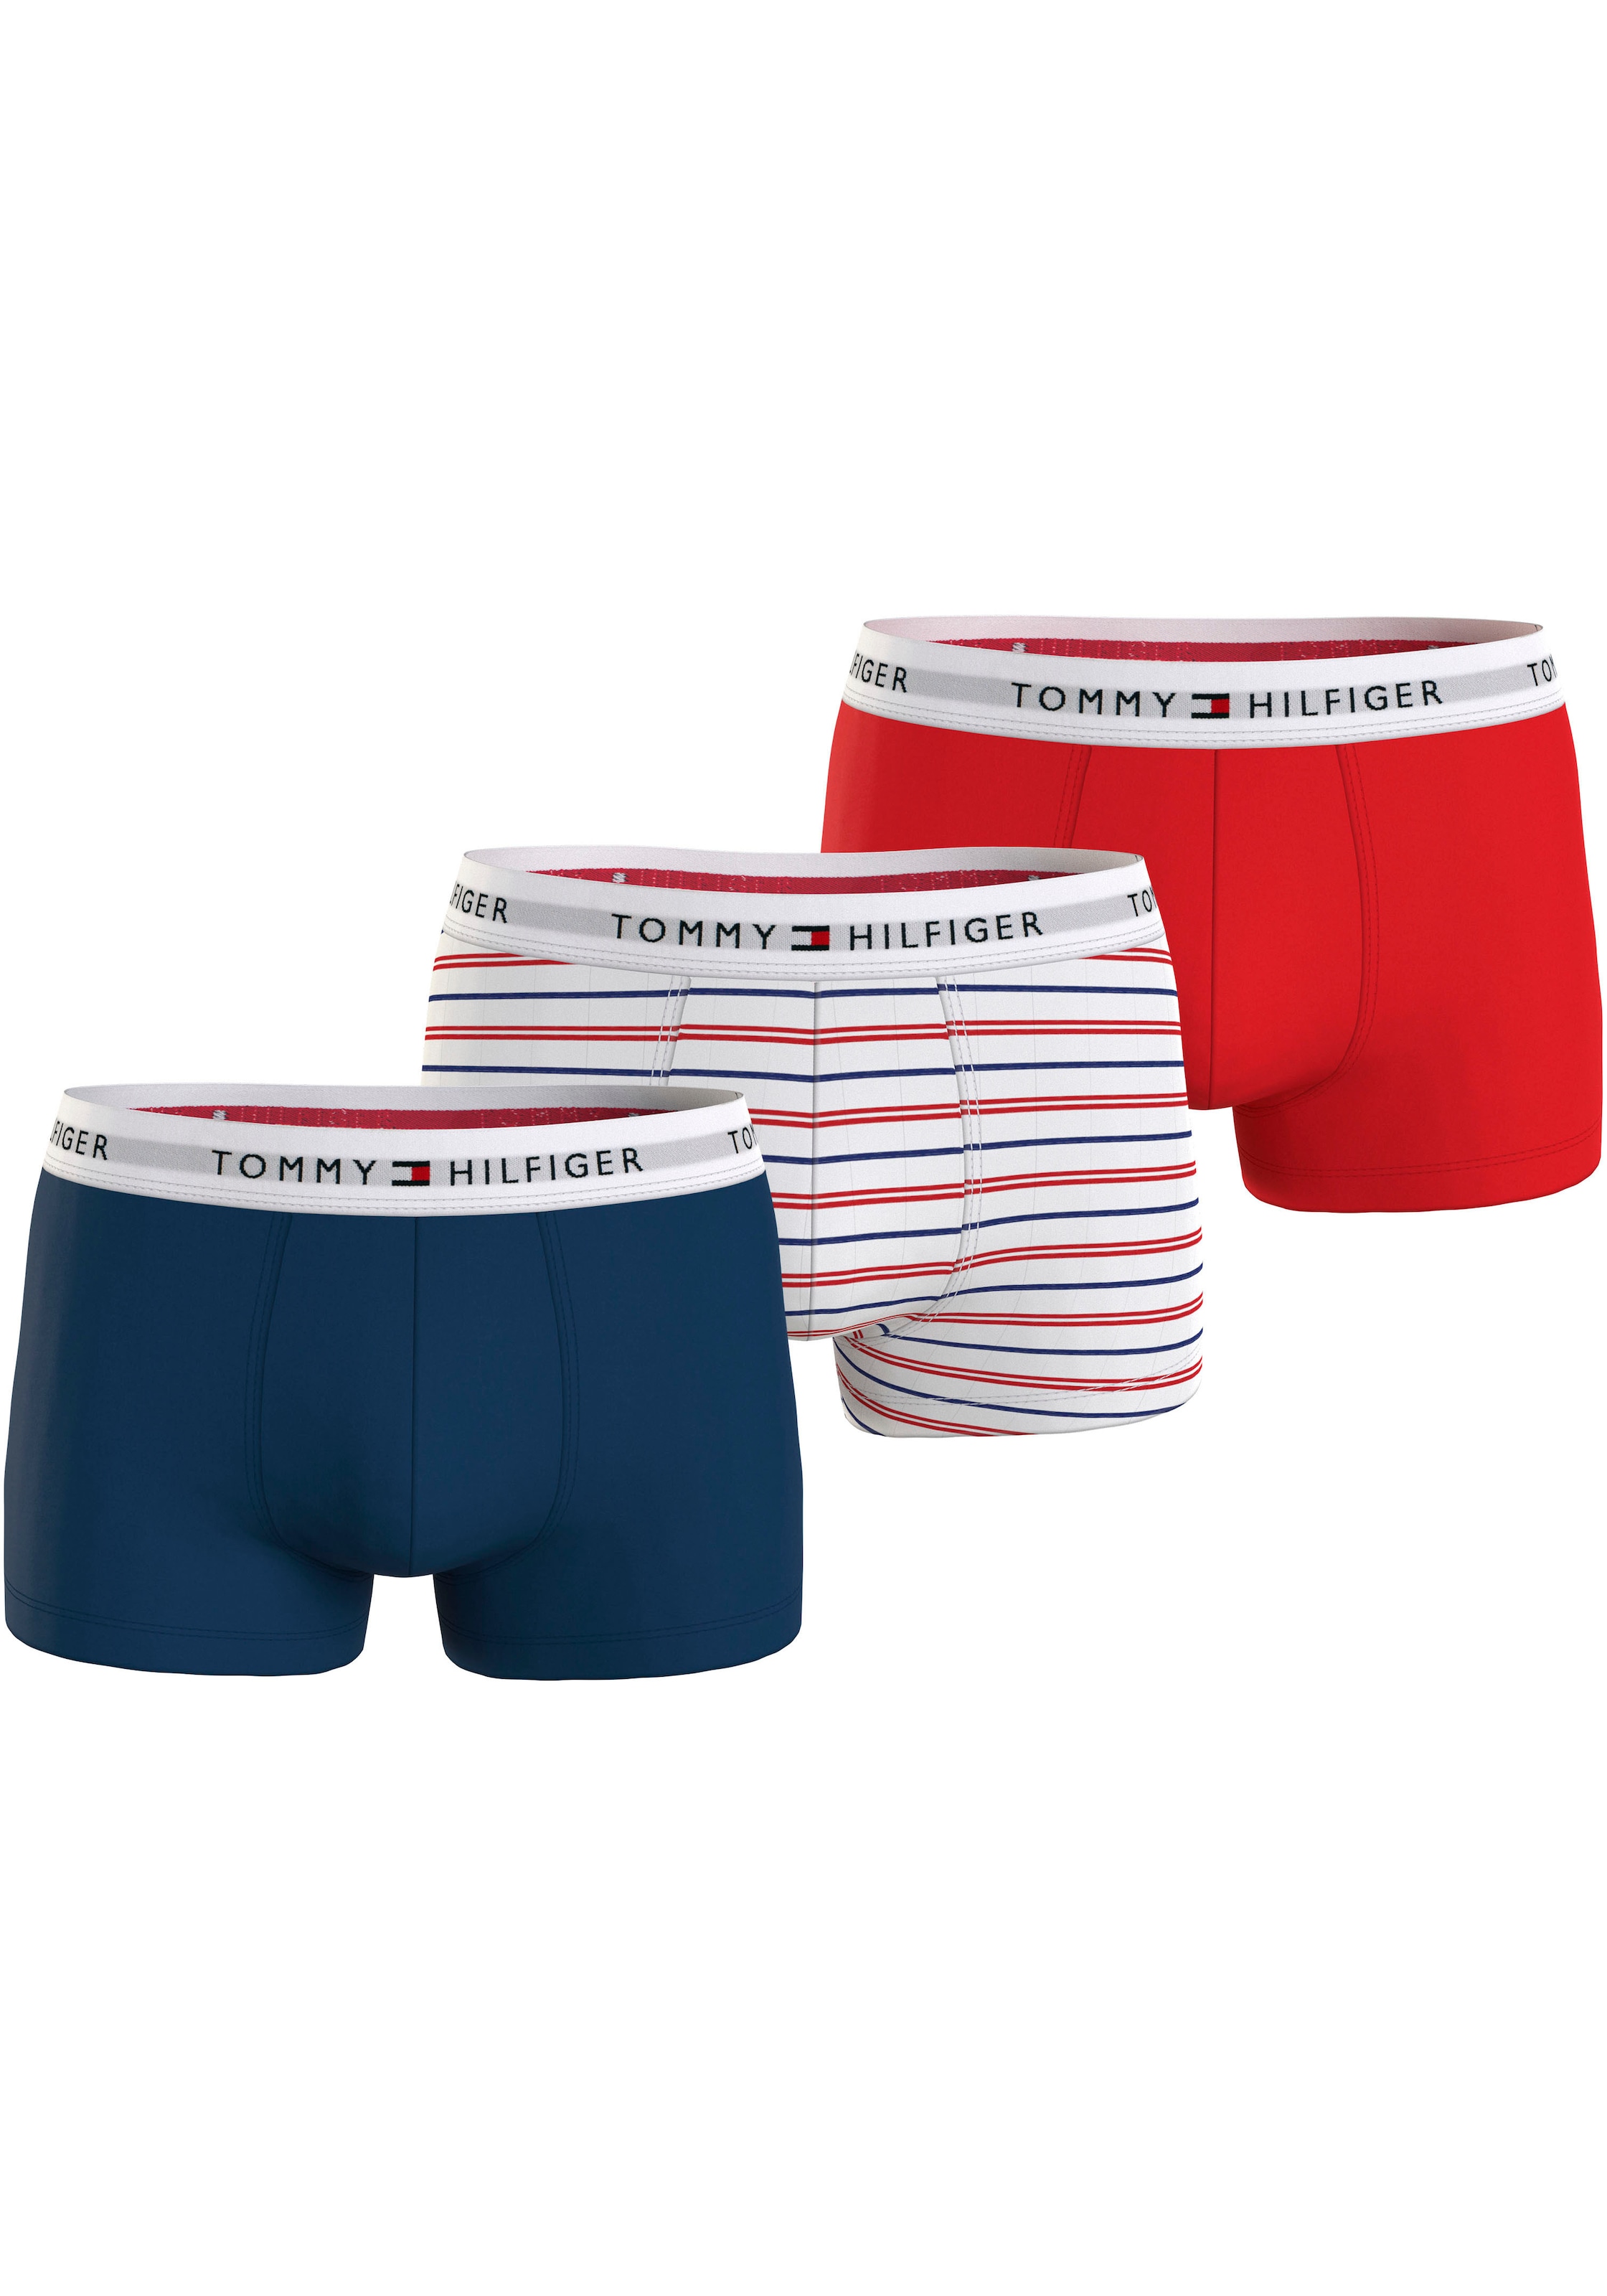 online kaufen Tommy Hilfiger | BAUR Underwear